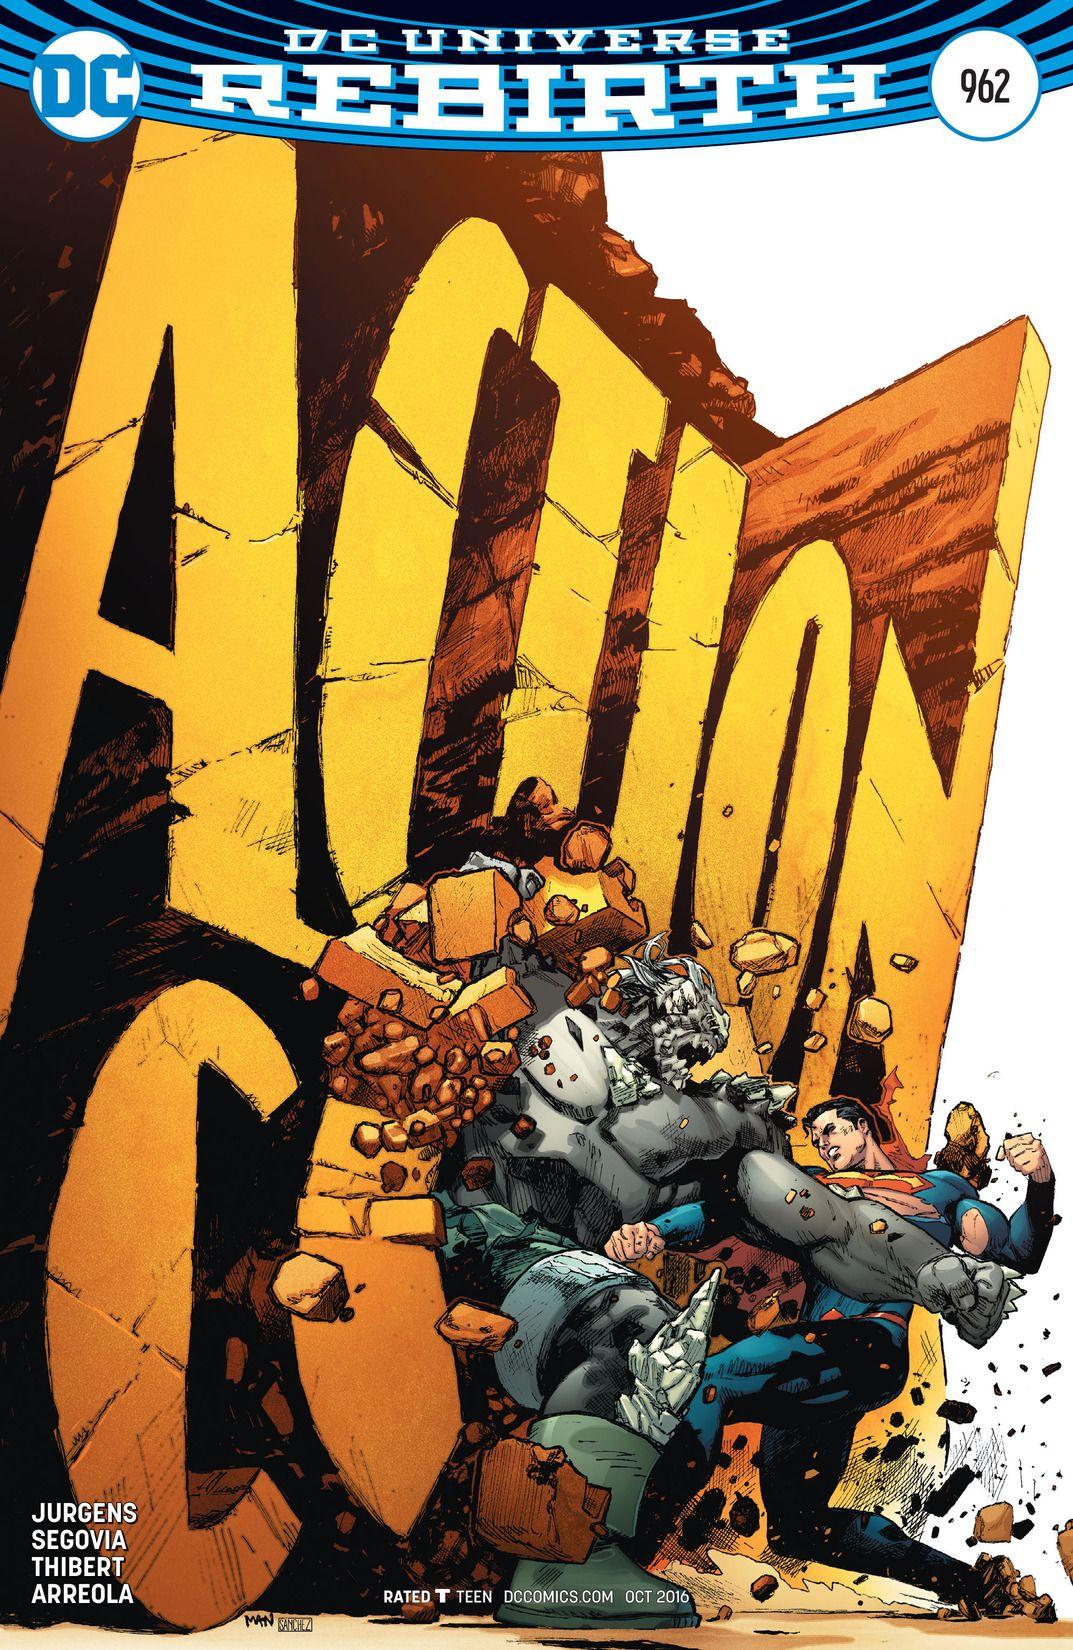 Action Comics Vol. 1 #962